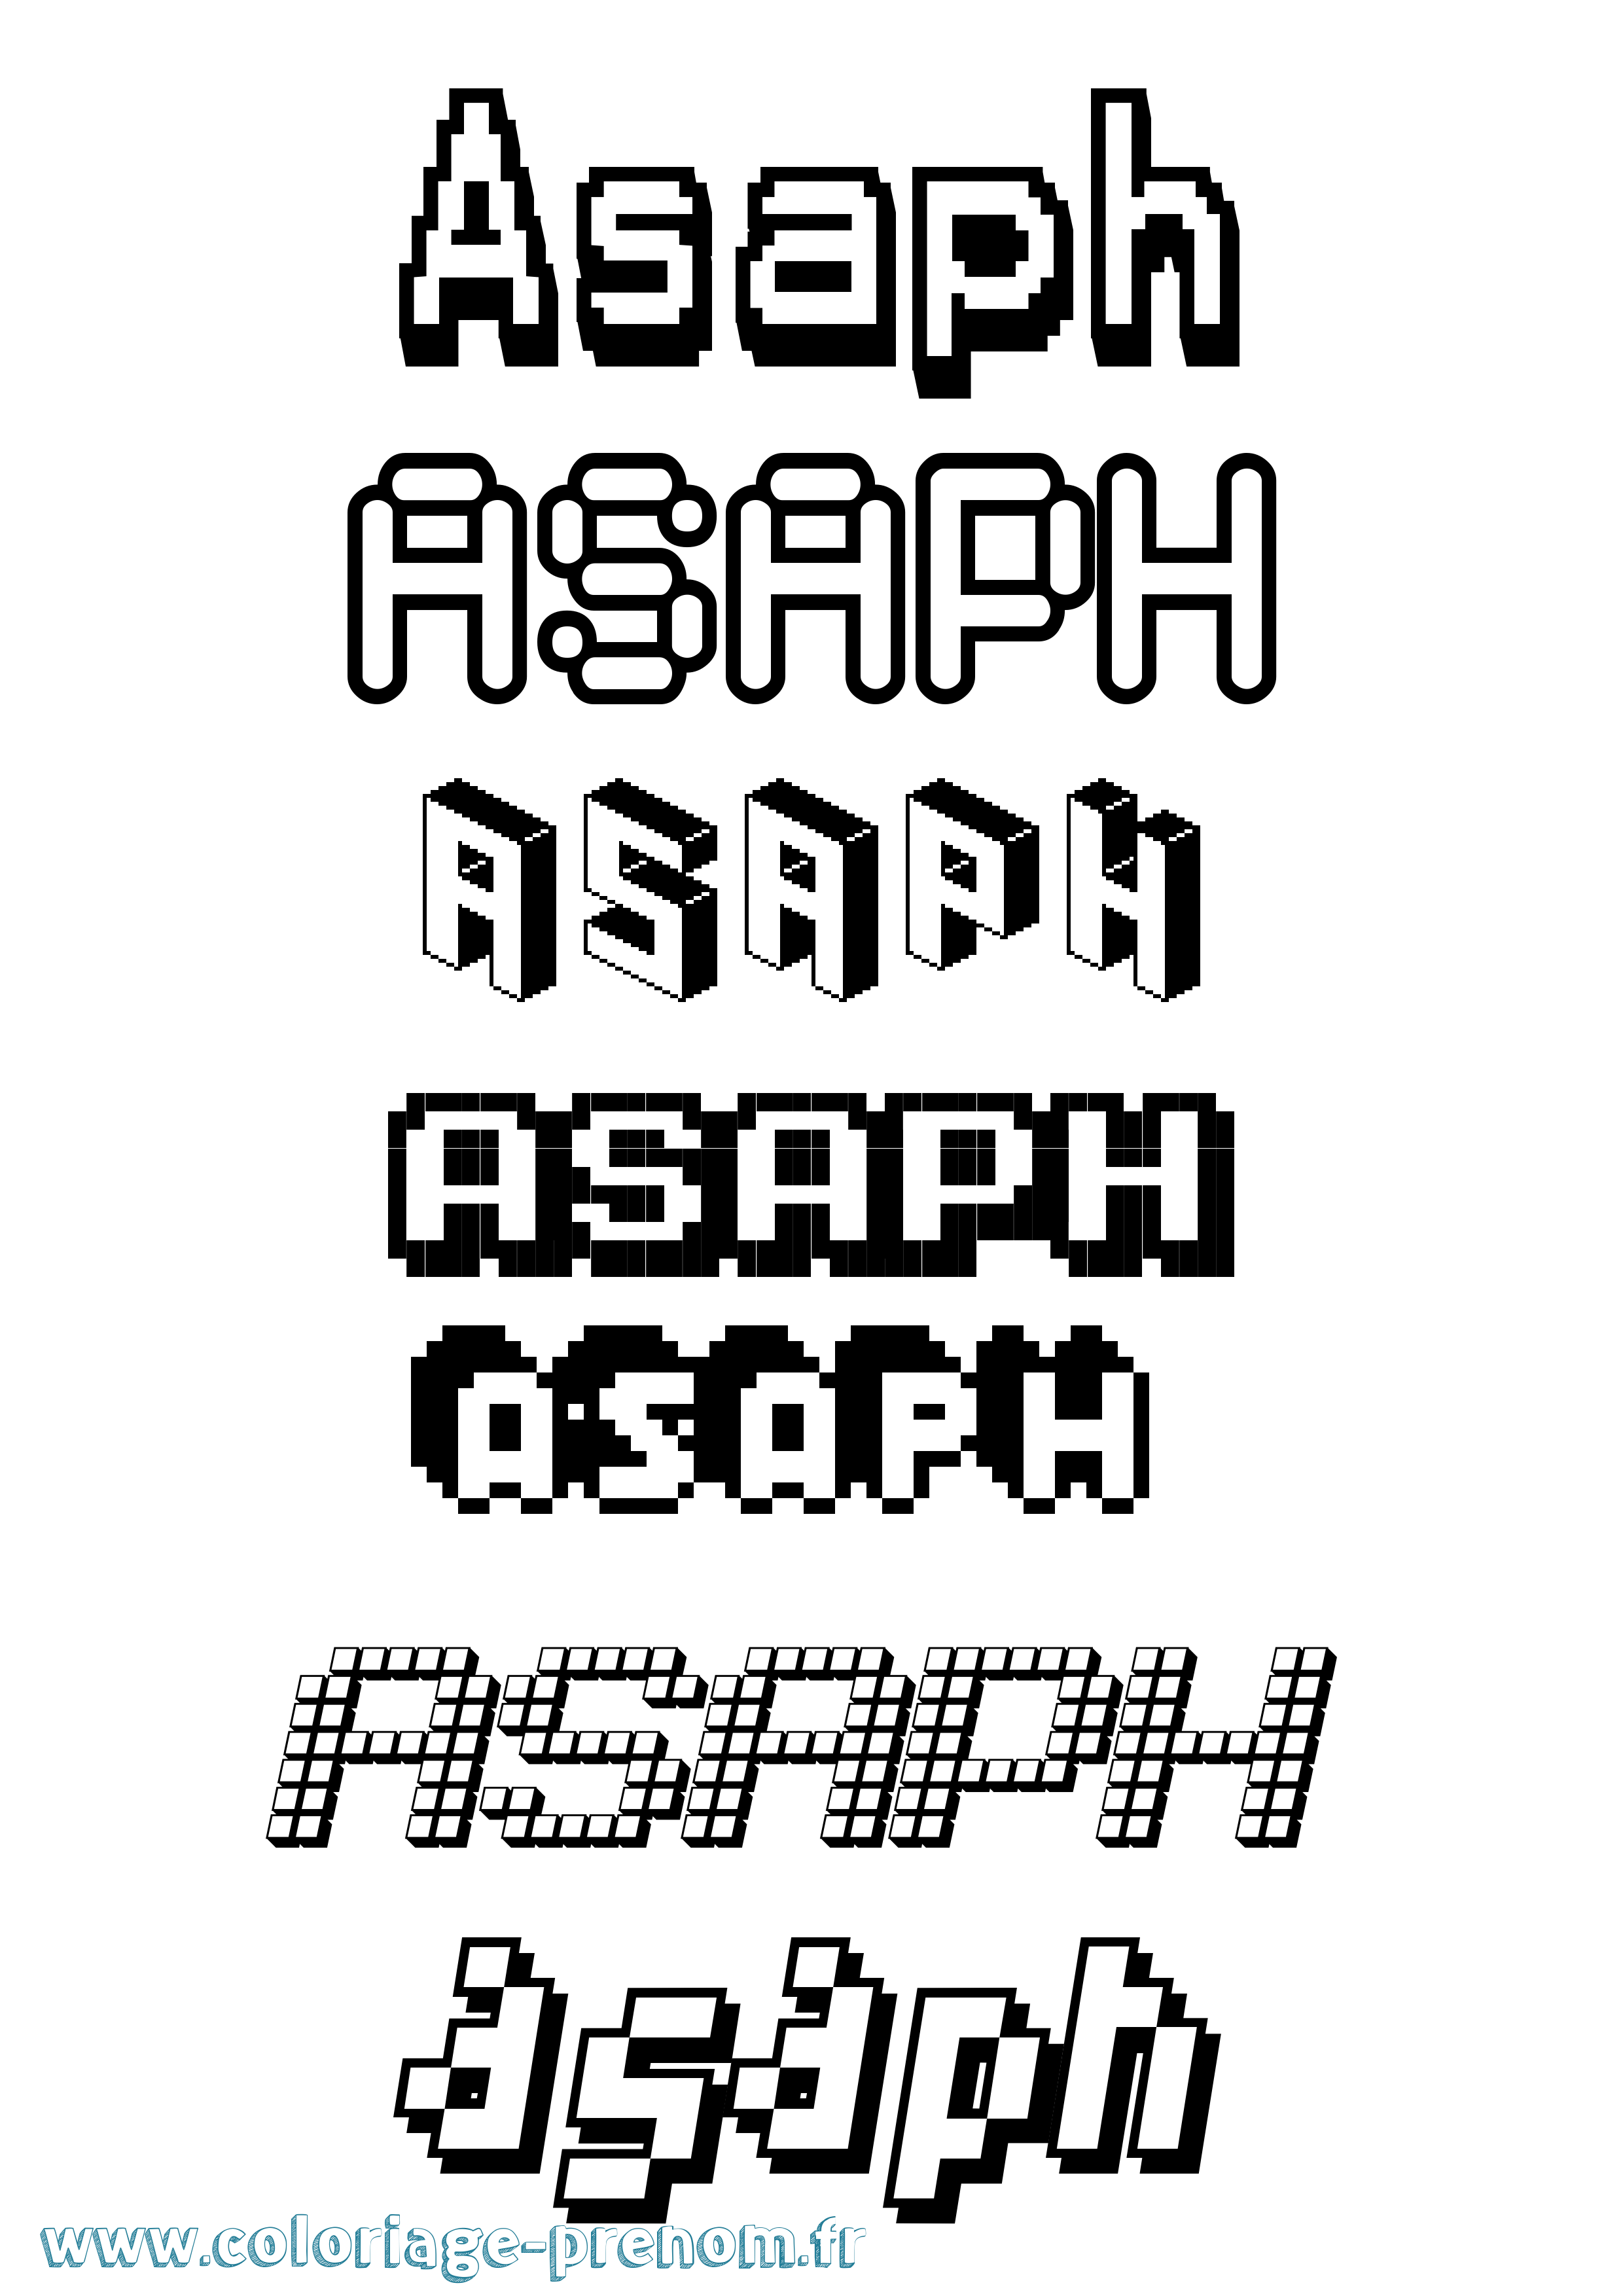 Coloriage prénom Asaph Pixel